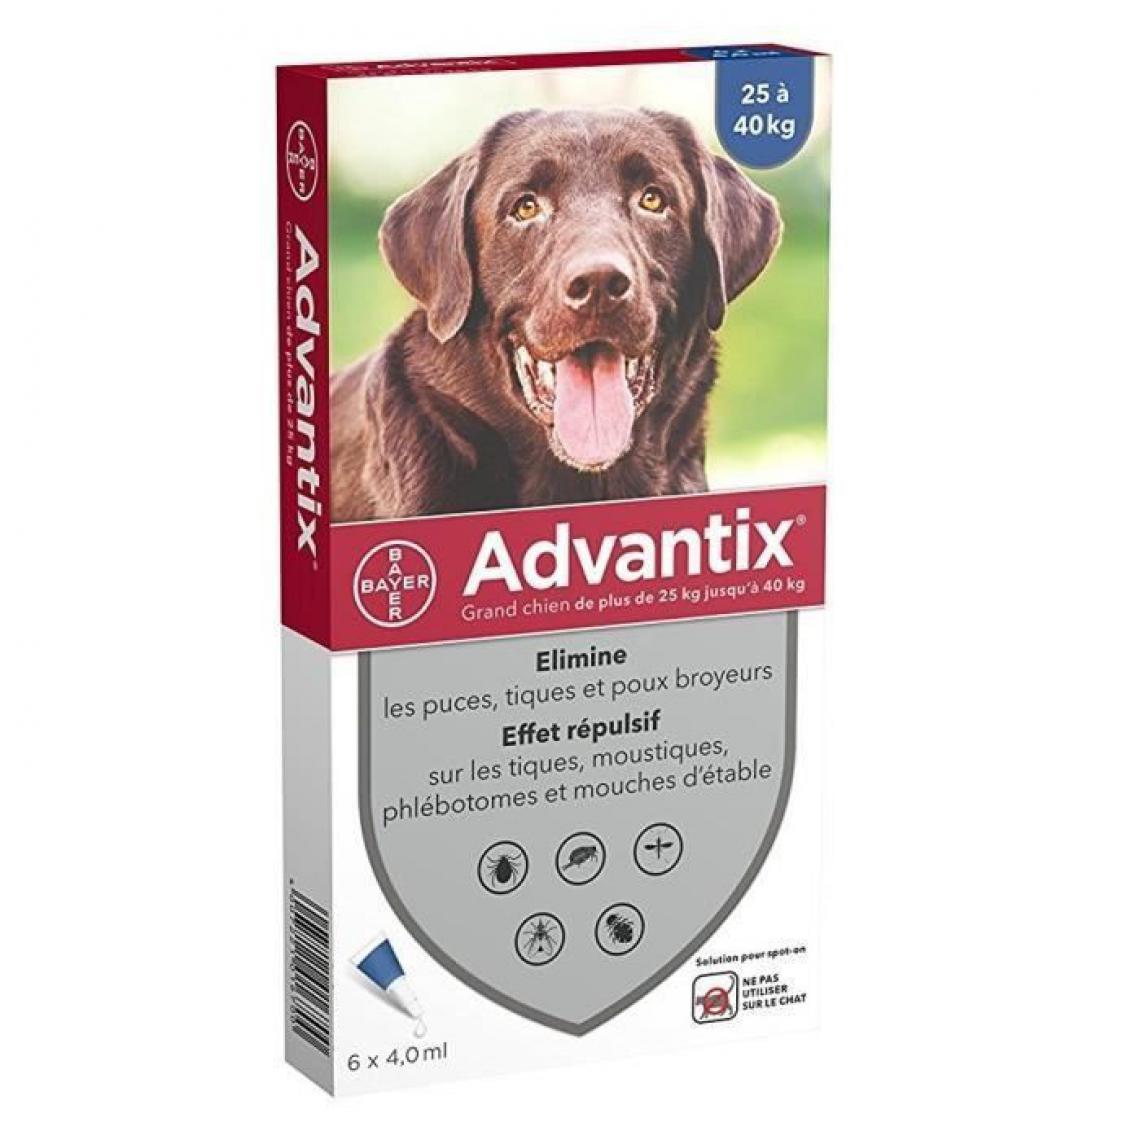 Advantix - ADVANTIX 6 pipettes antiparasitaires - Pour grand chien de plus de 25kg - Anti-parasitaire pour chien